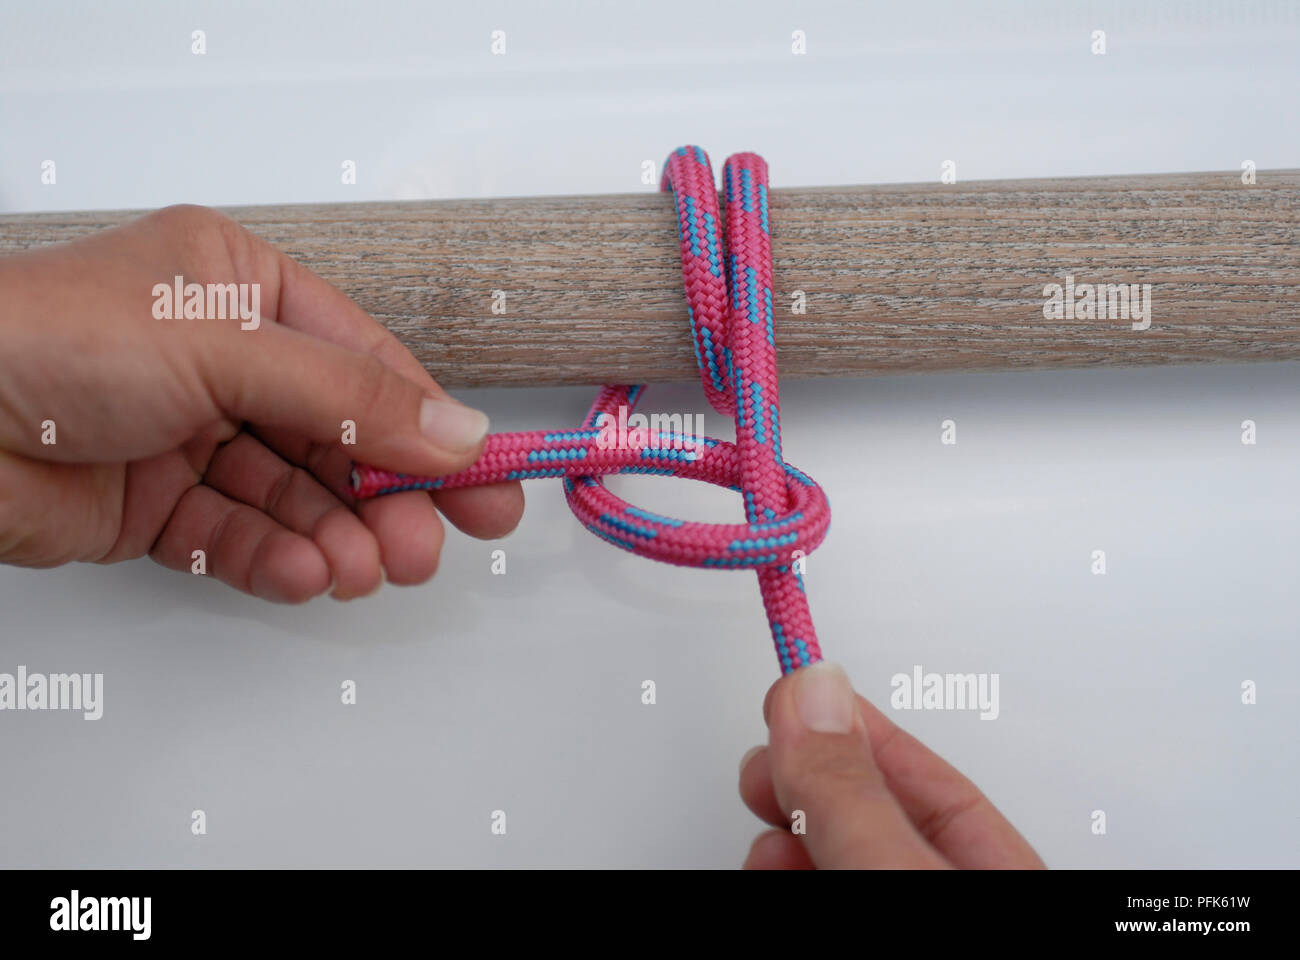 Hands tying rope around wood Stock Photo - Alamy